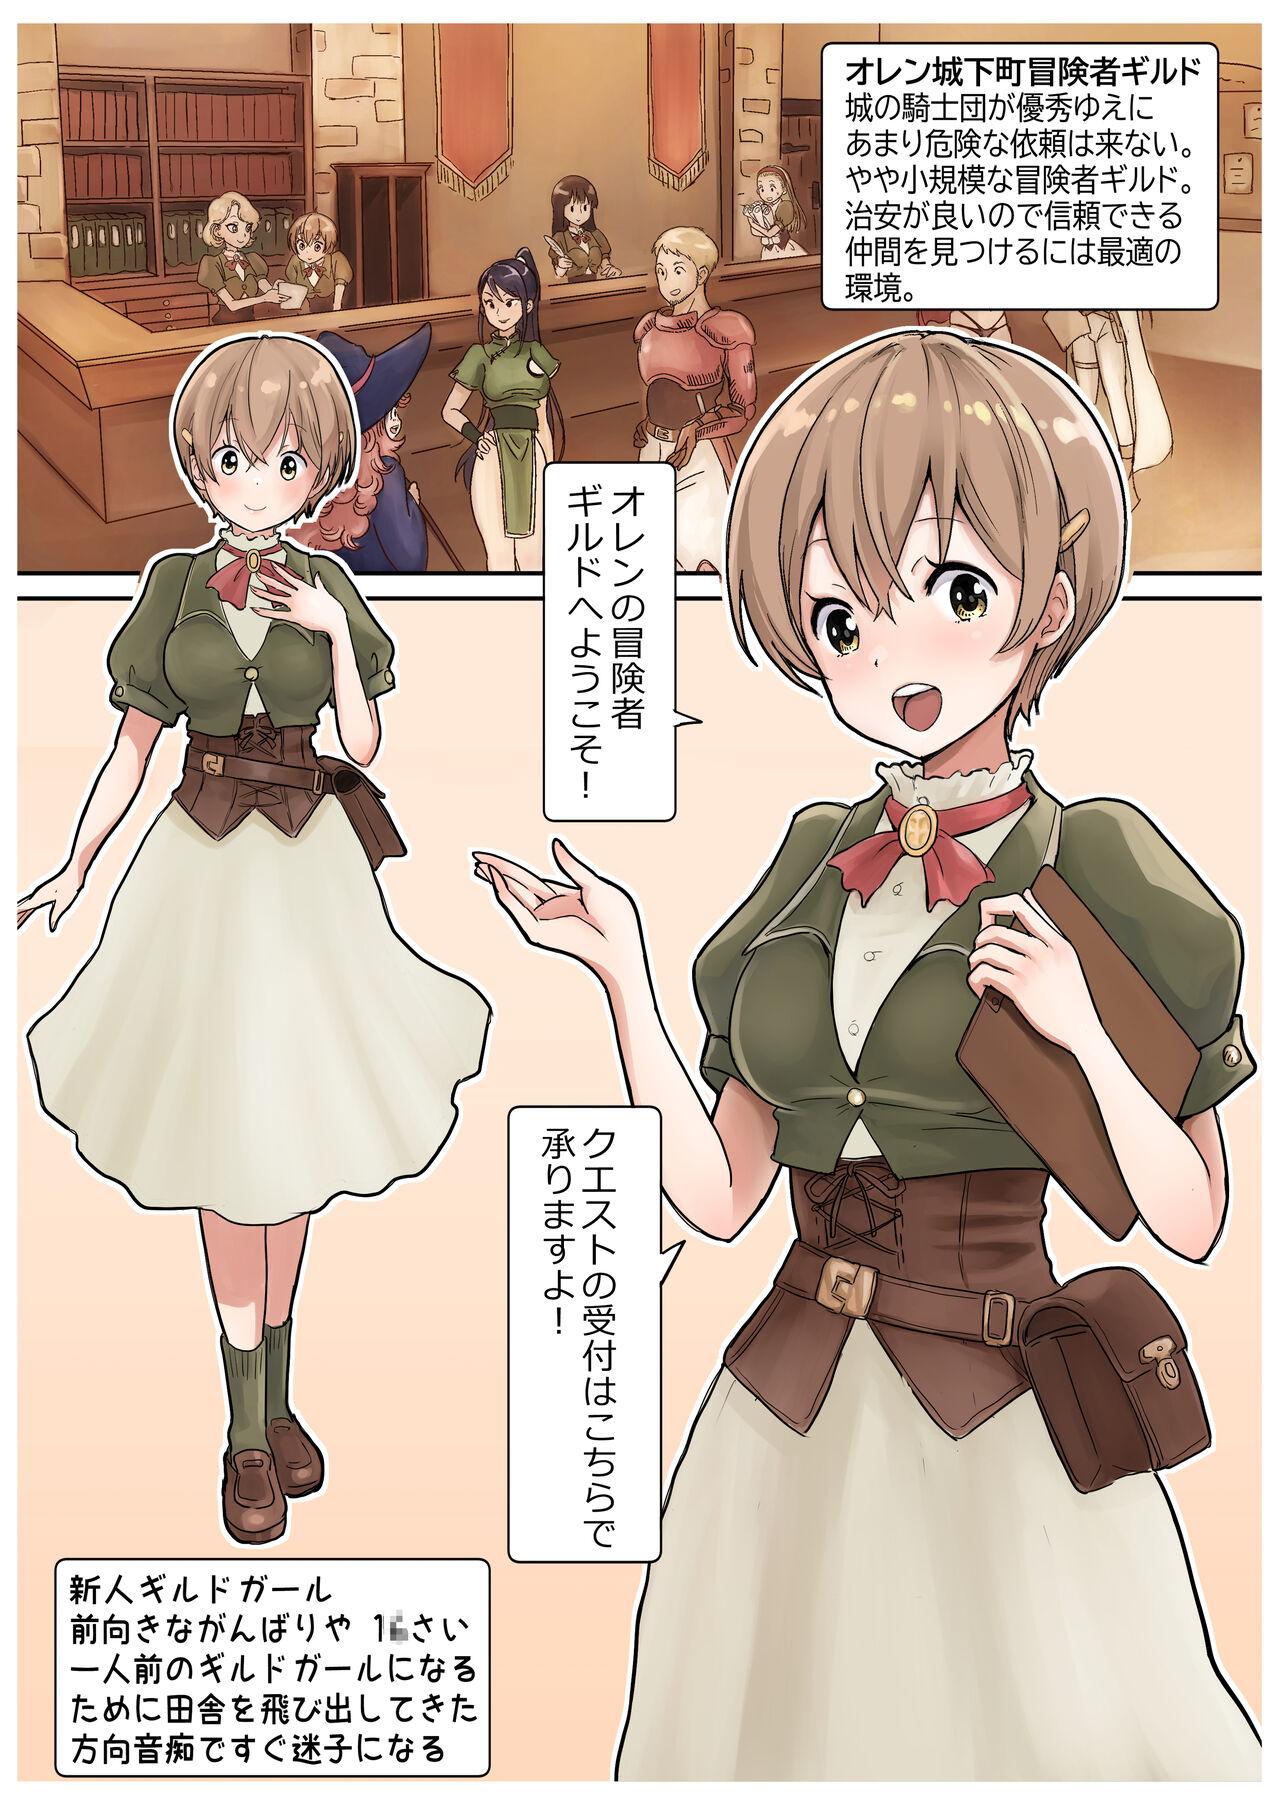 [tsubame] RPG girls ❤︎ [NPC kan no shou] 1 27